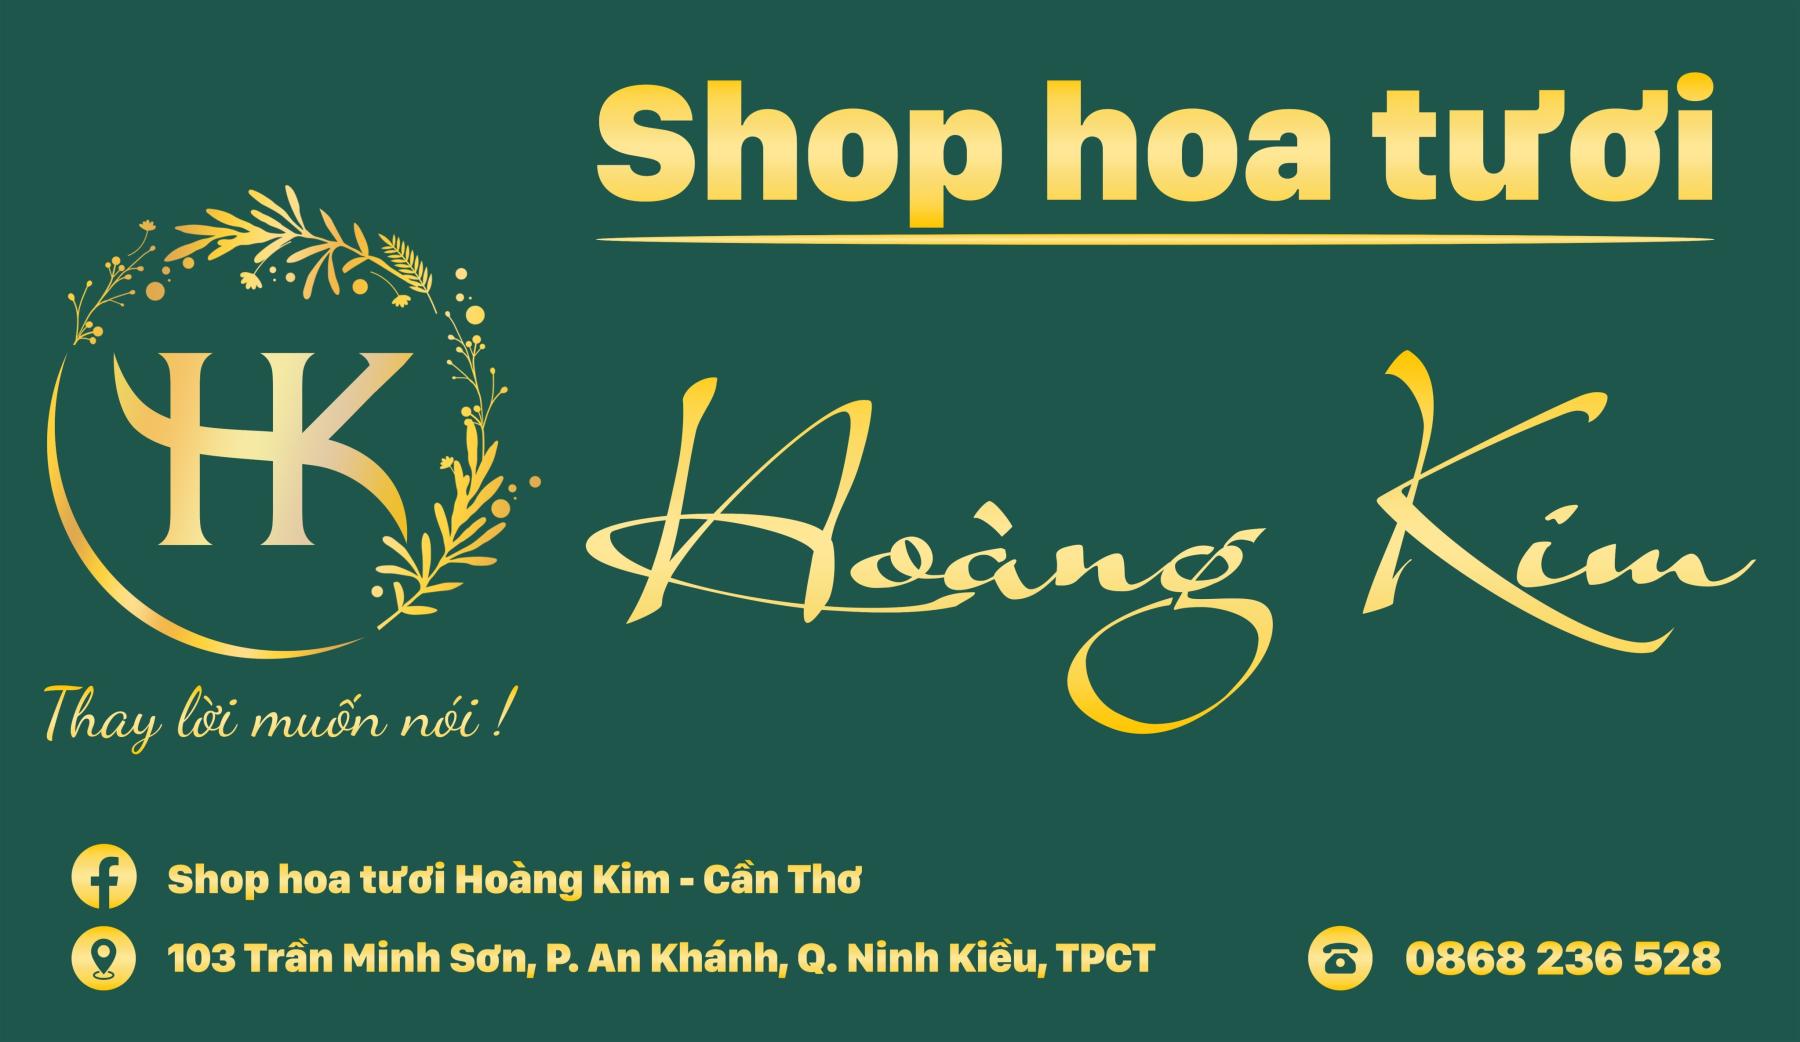 SHOP HOA TƯƠI HOÀNG KIM